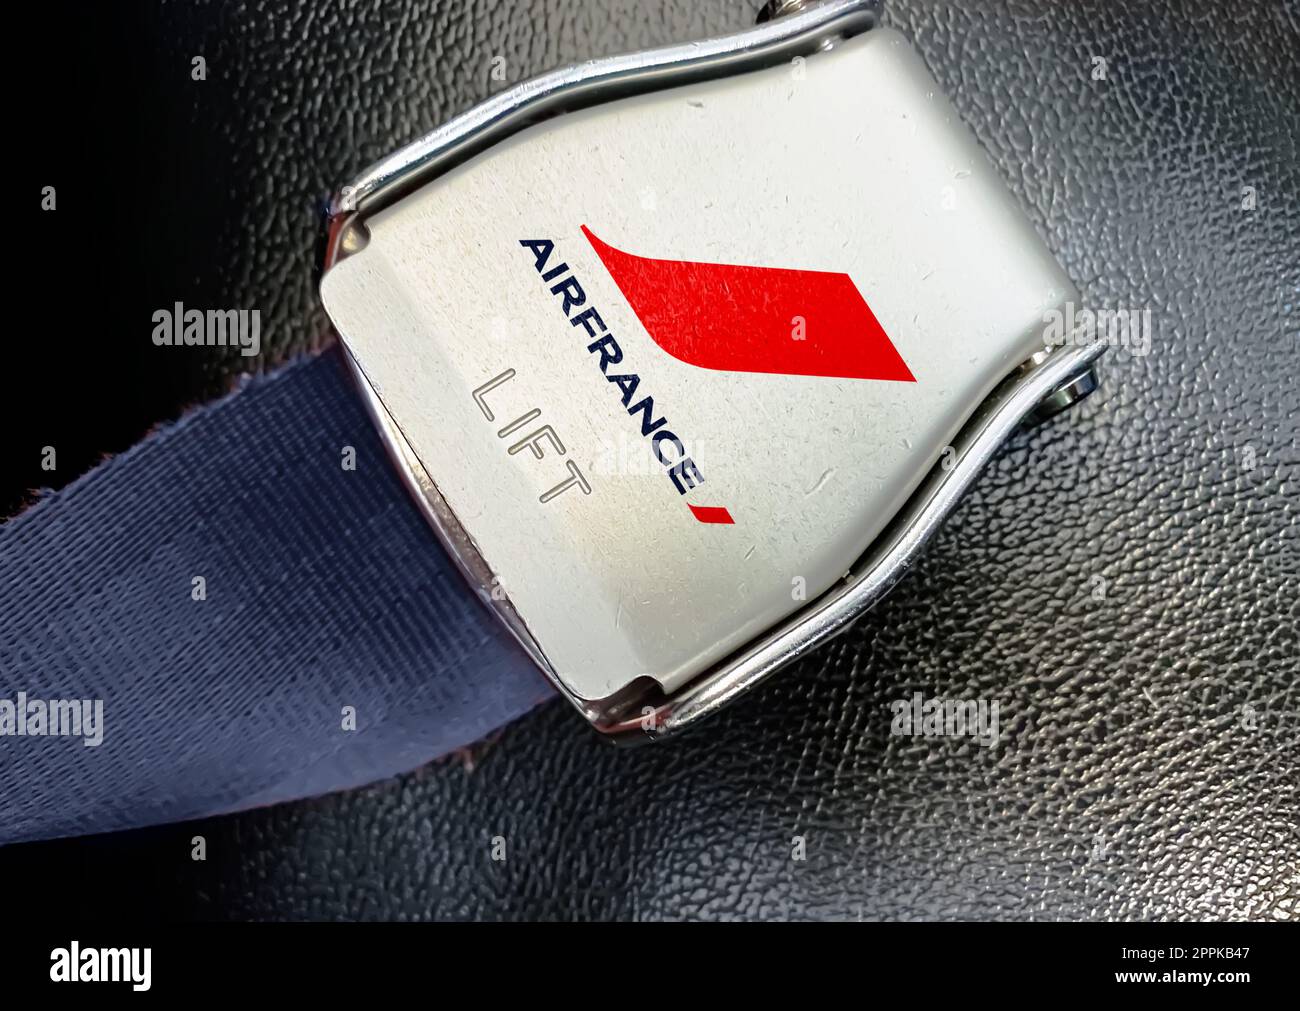 Détail de la boucle de la ceinture de sécurité avec le logo des compagnies aériennes Air France sur un siège vide Banque D'Images